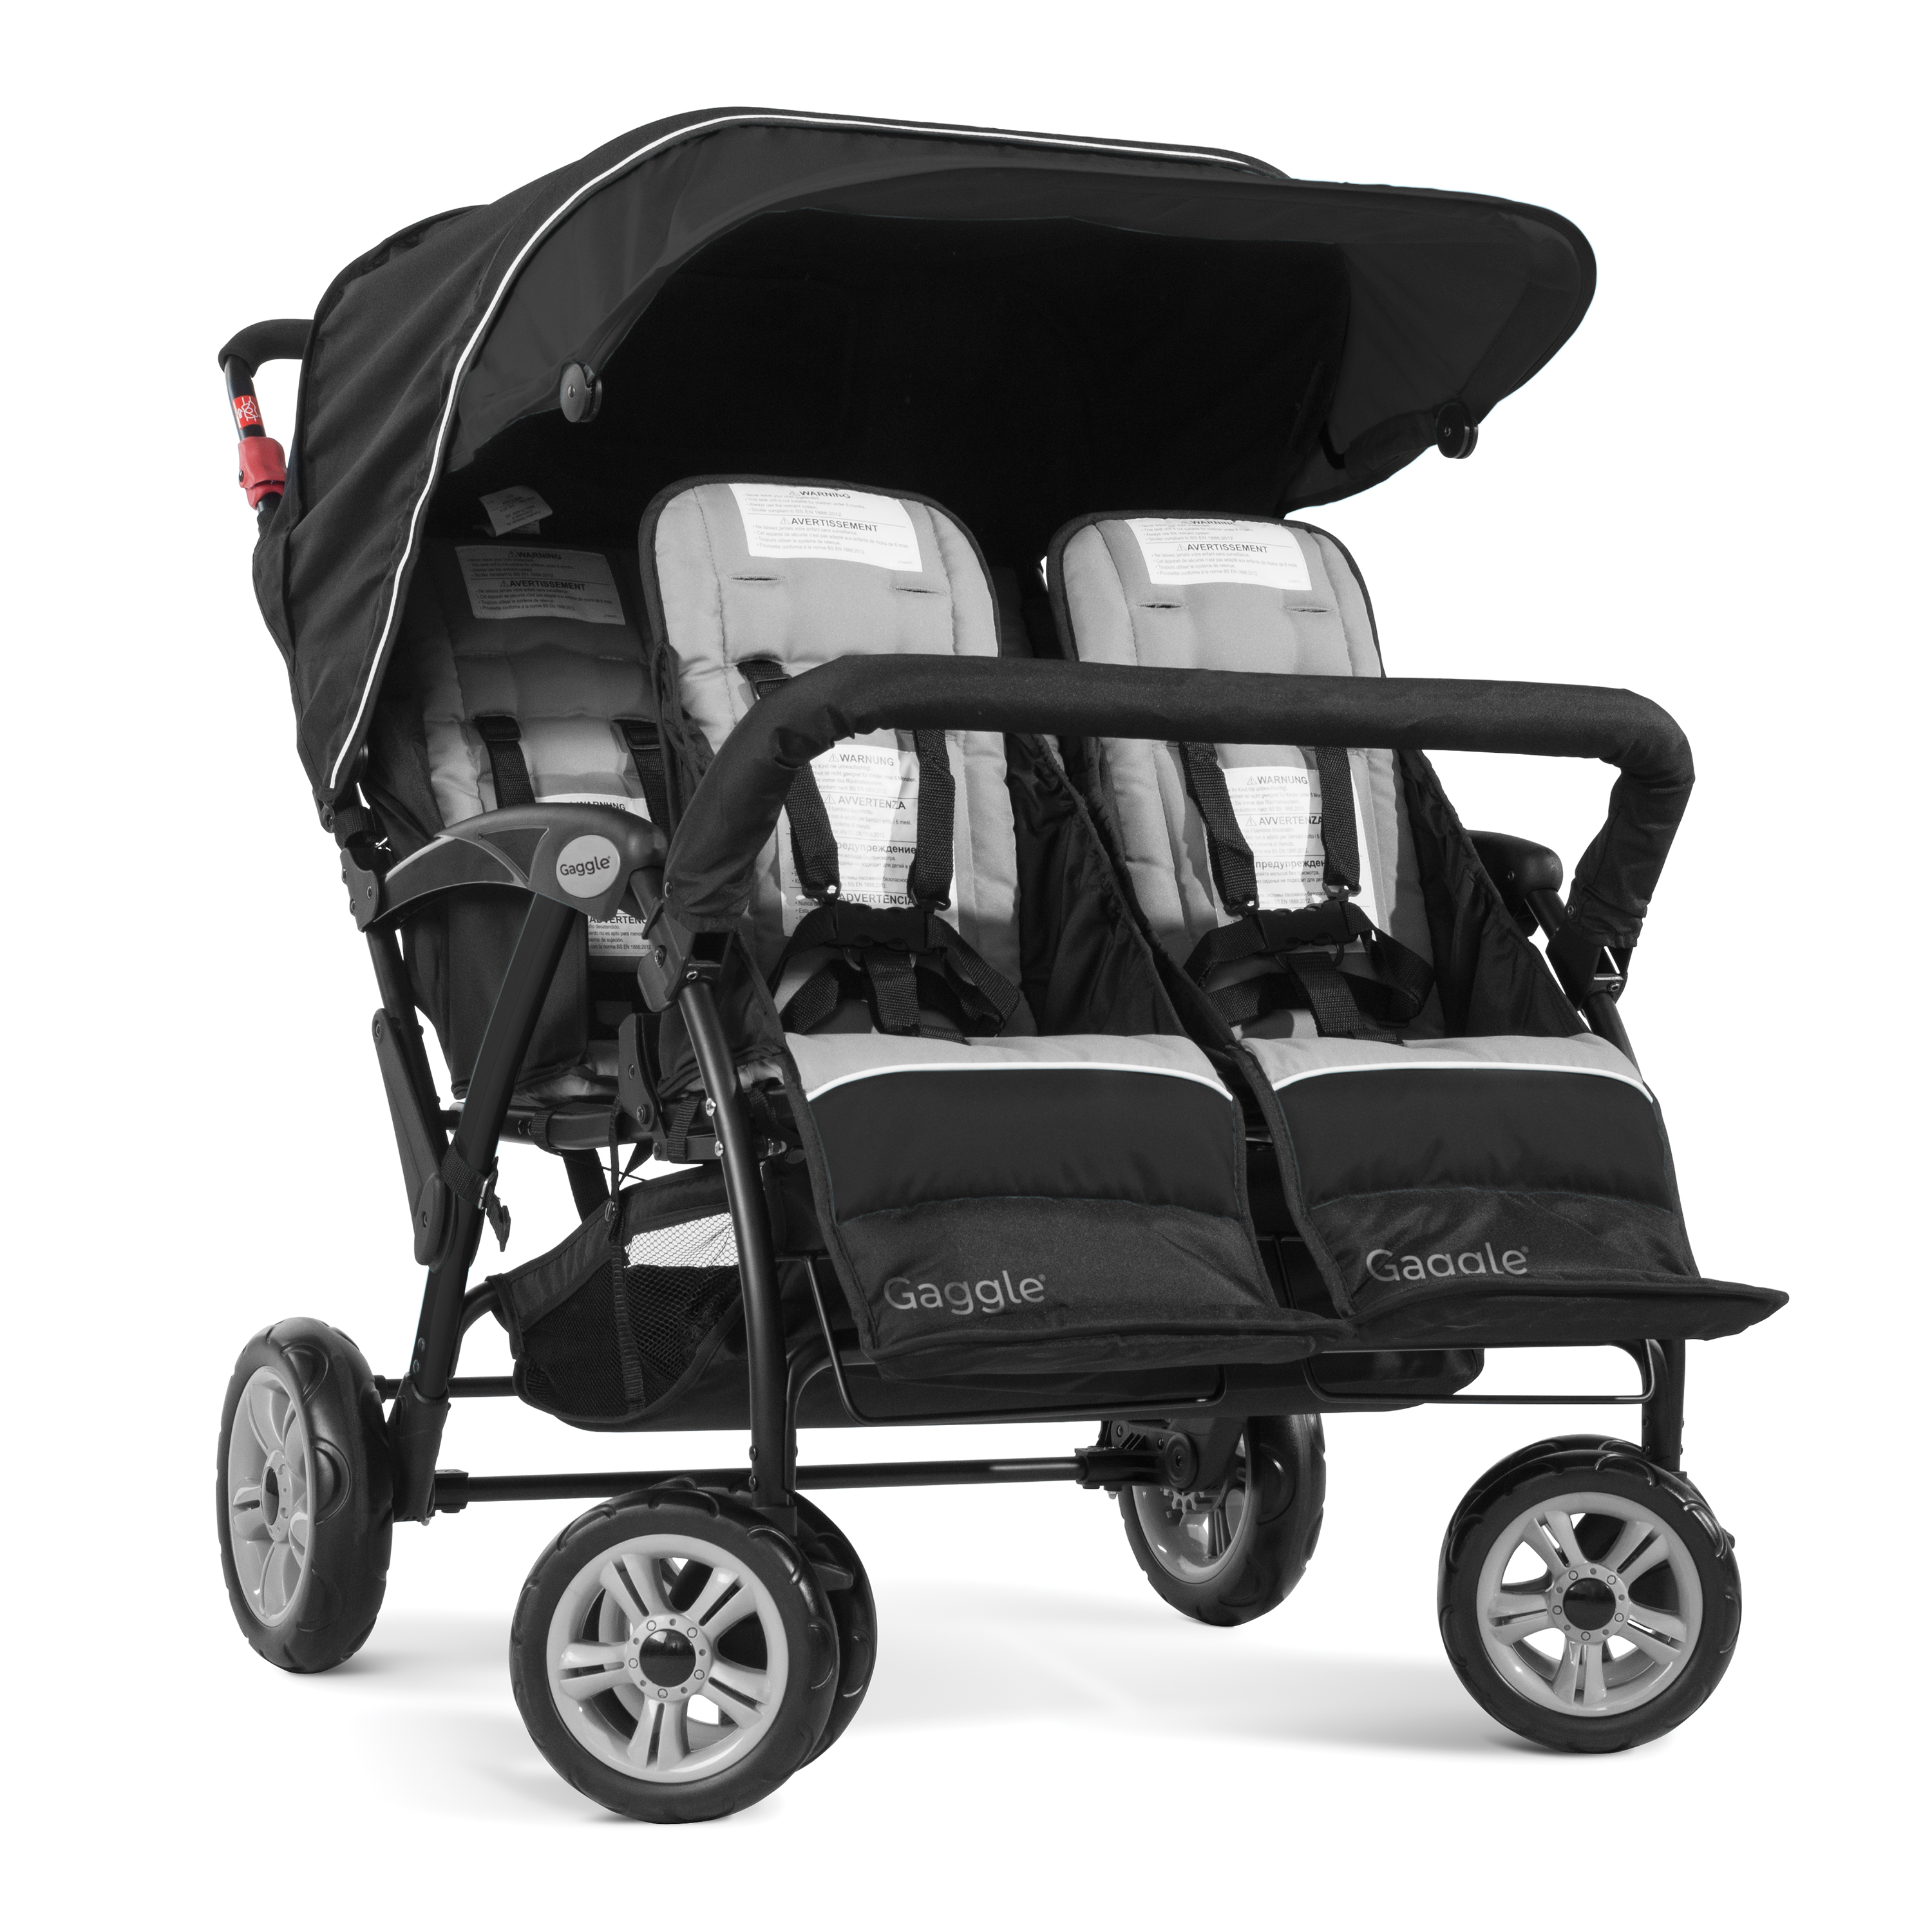 Gaggle Compass 4x4 quad kinderwagen / buggy voor 4 kinderen in zwart